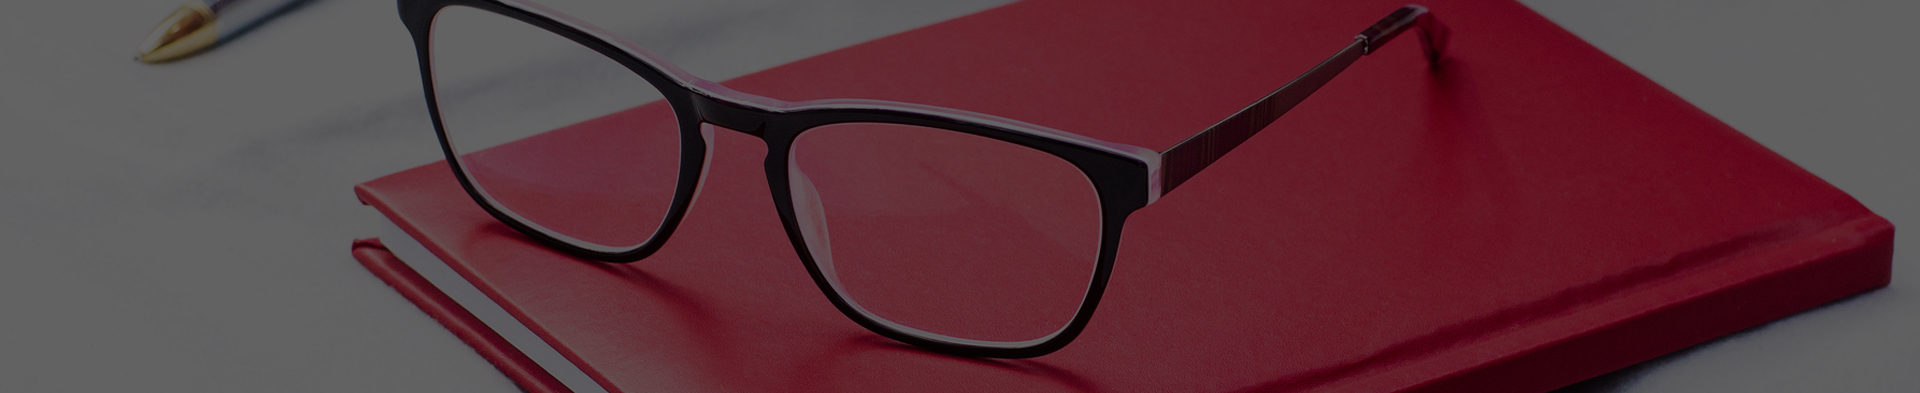 Vše, co potřebujete vědět o brýlích s filtrem modrého světla